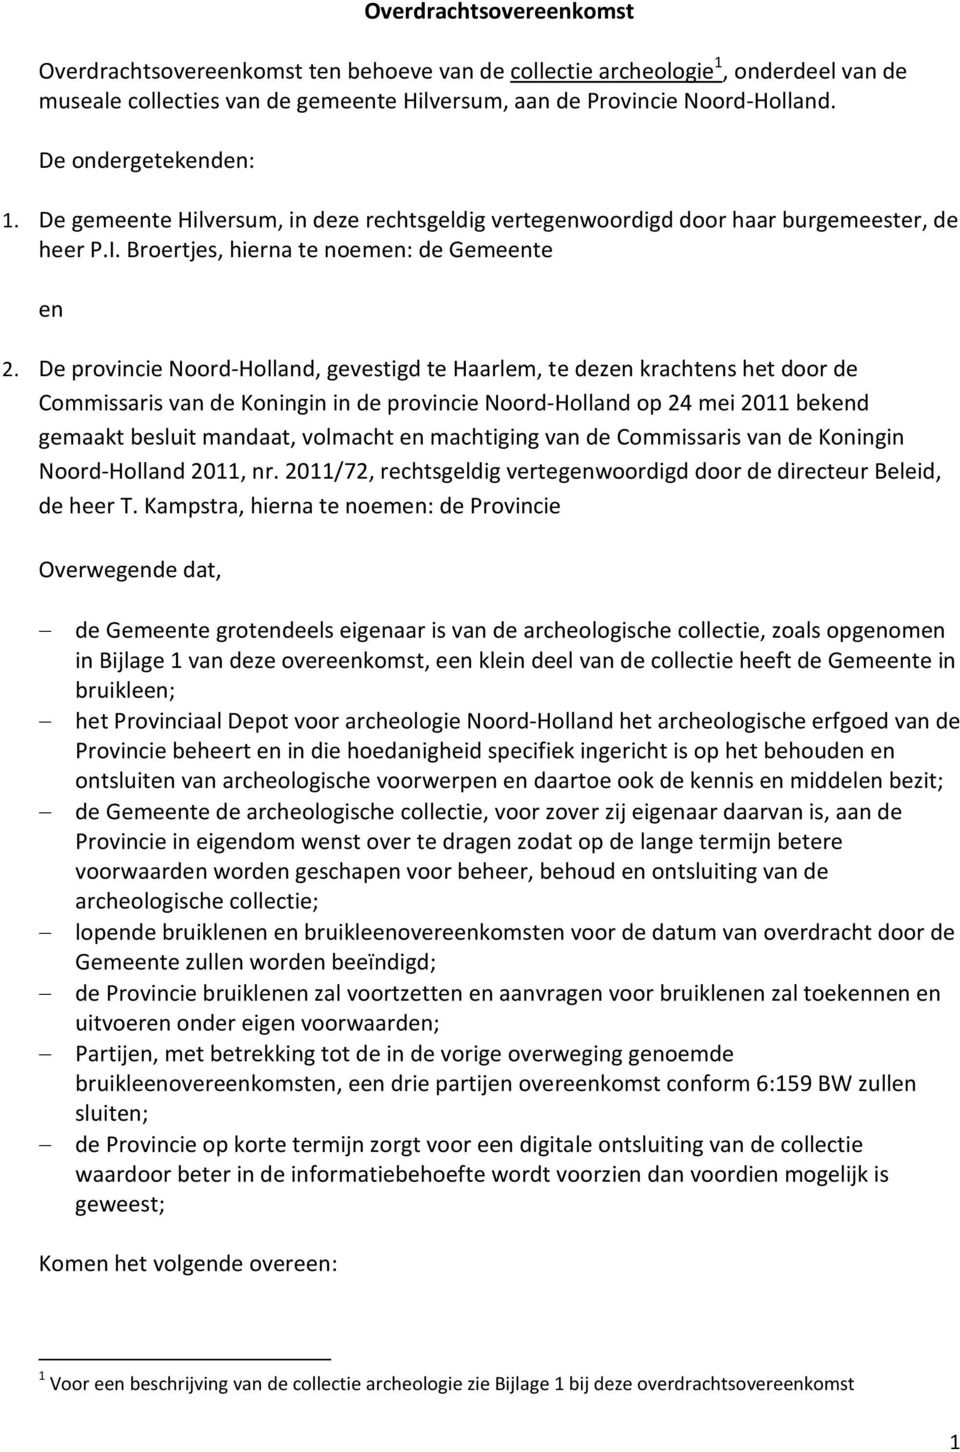 De provincie Noord-Holland, gevestigd te Haarlem, te dezen krachtens het door de Commissaris van de Koningin in de provincie Noord-Holland op 24 mei 2011 bekend gemaakt besluit mandaat, volmacht en